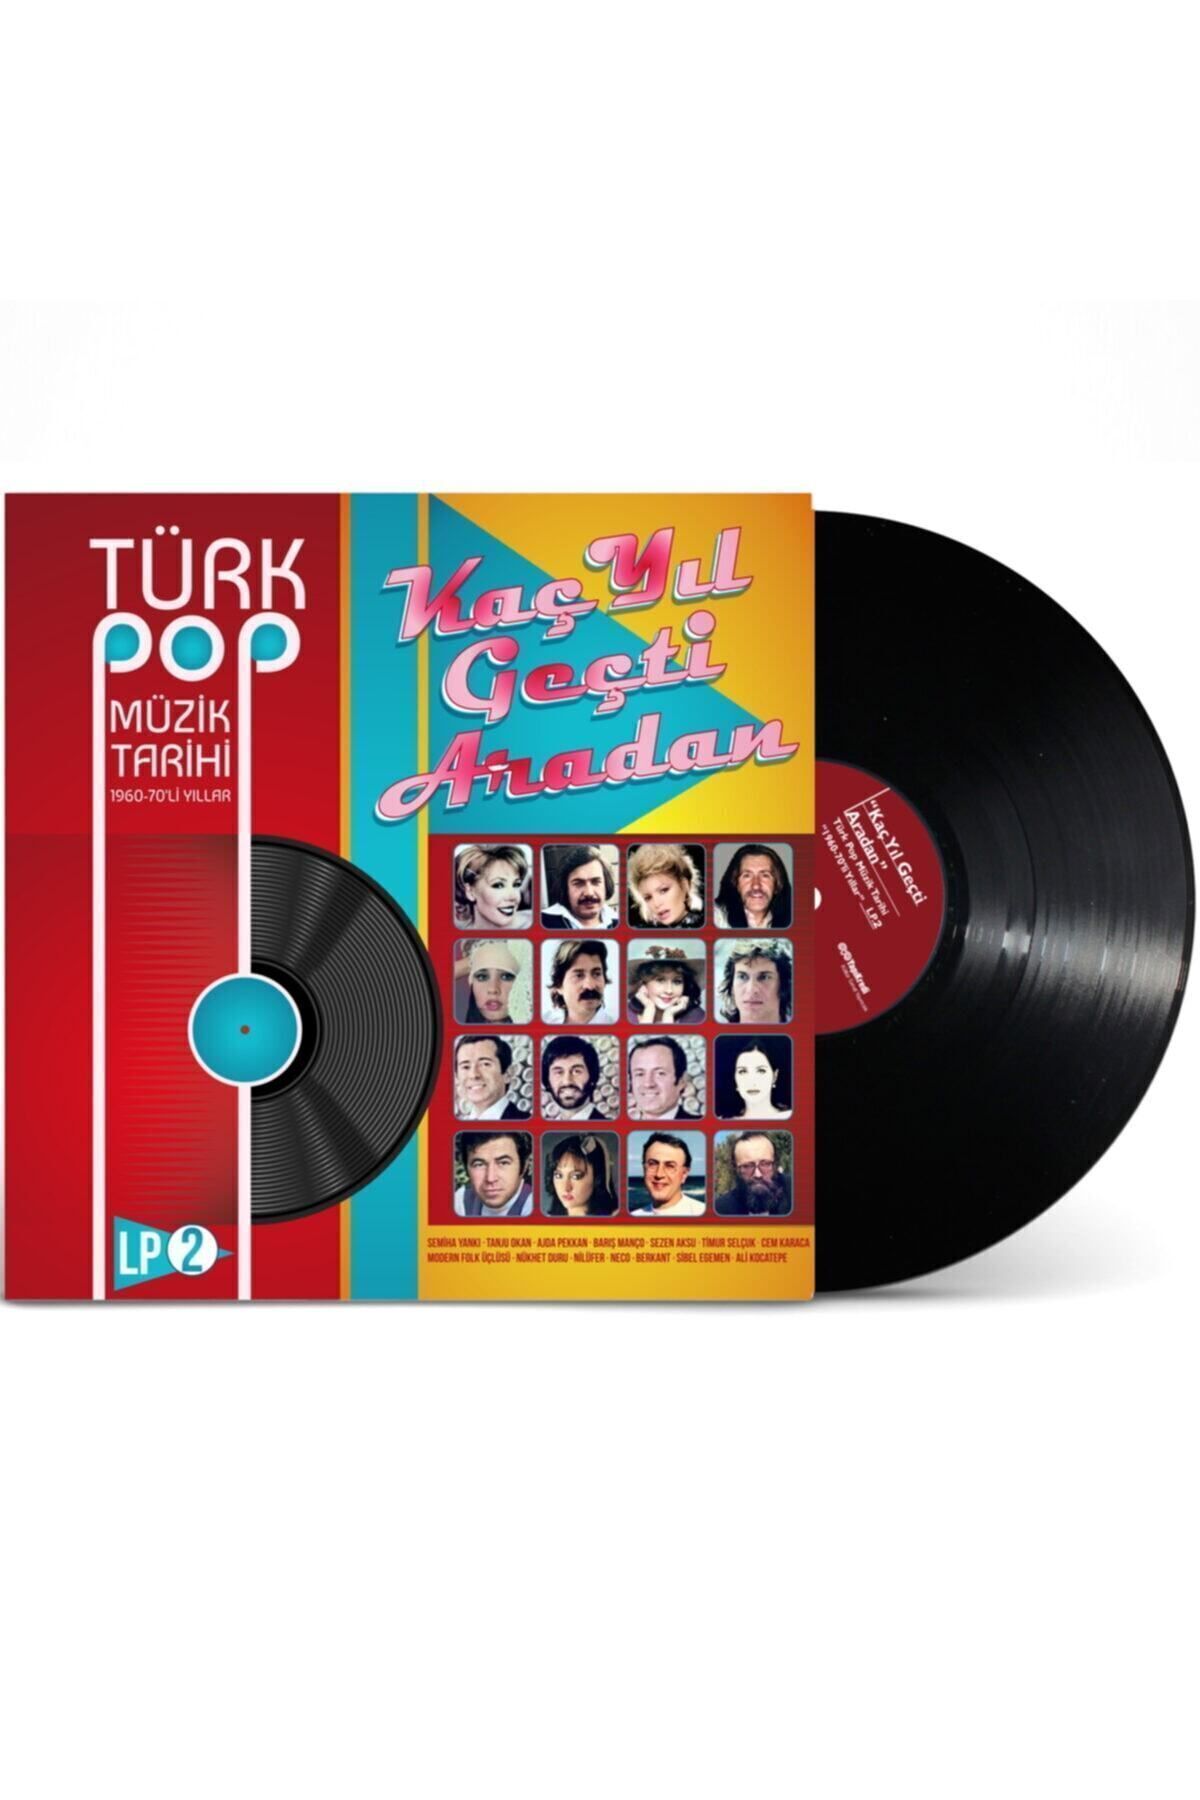 plakmarketi Plak - Türk Pop Müzik Tarihi 1960-70'lı Yıllar – 2